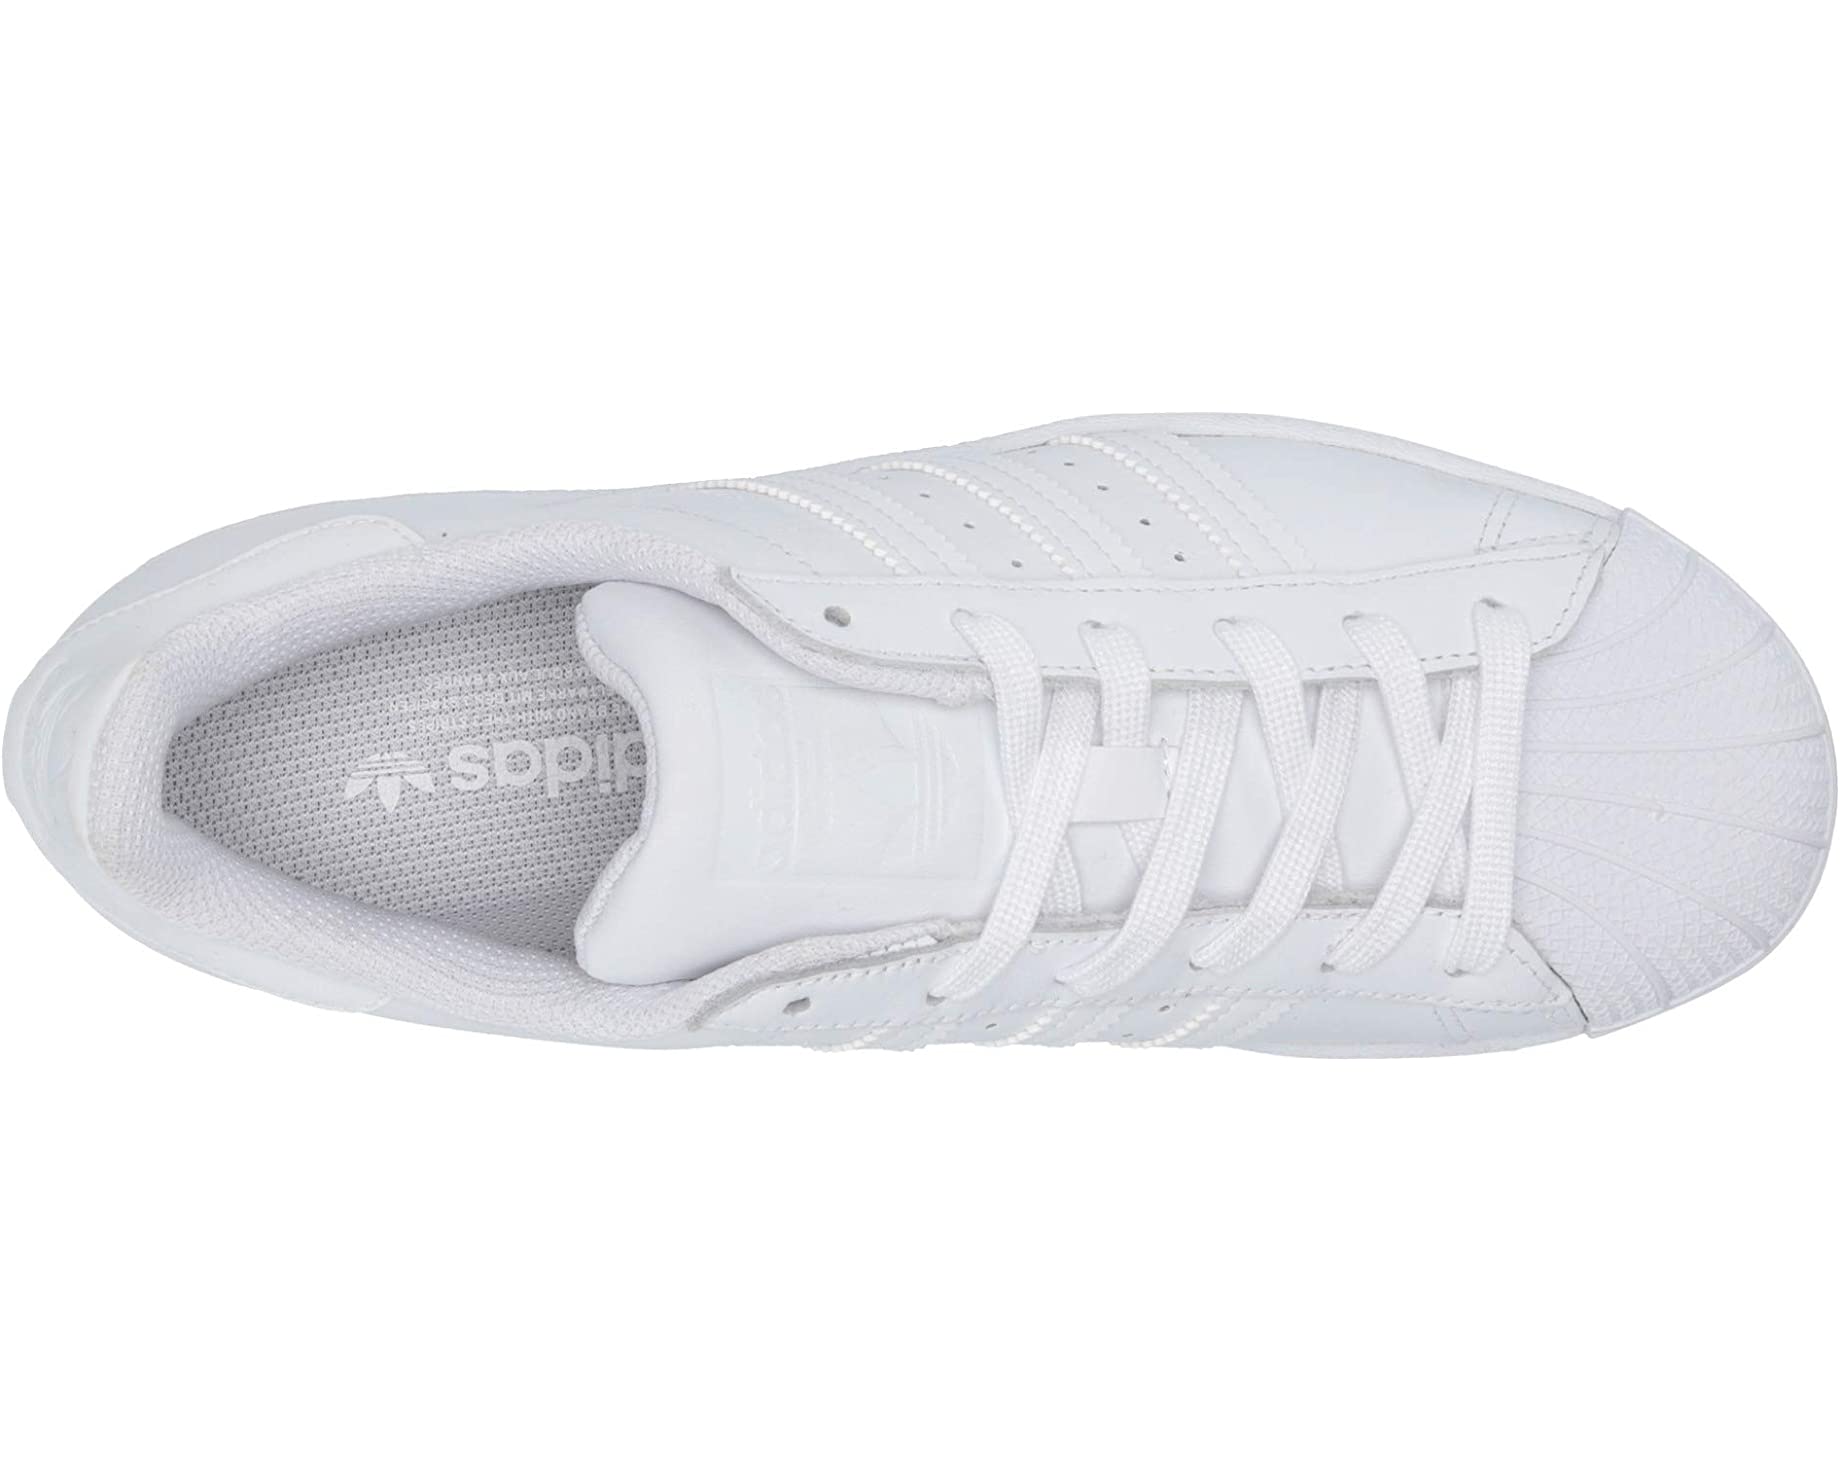 Кроссовки Superstar W adidas Originals, обувь белая кроссовки adidas originals samba og обувь белая глина кристально белая